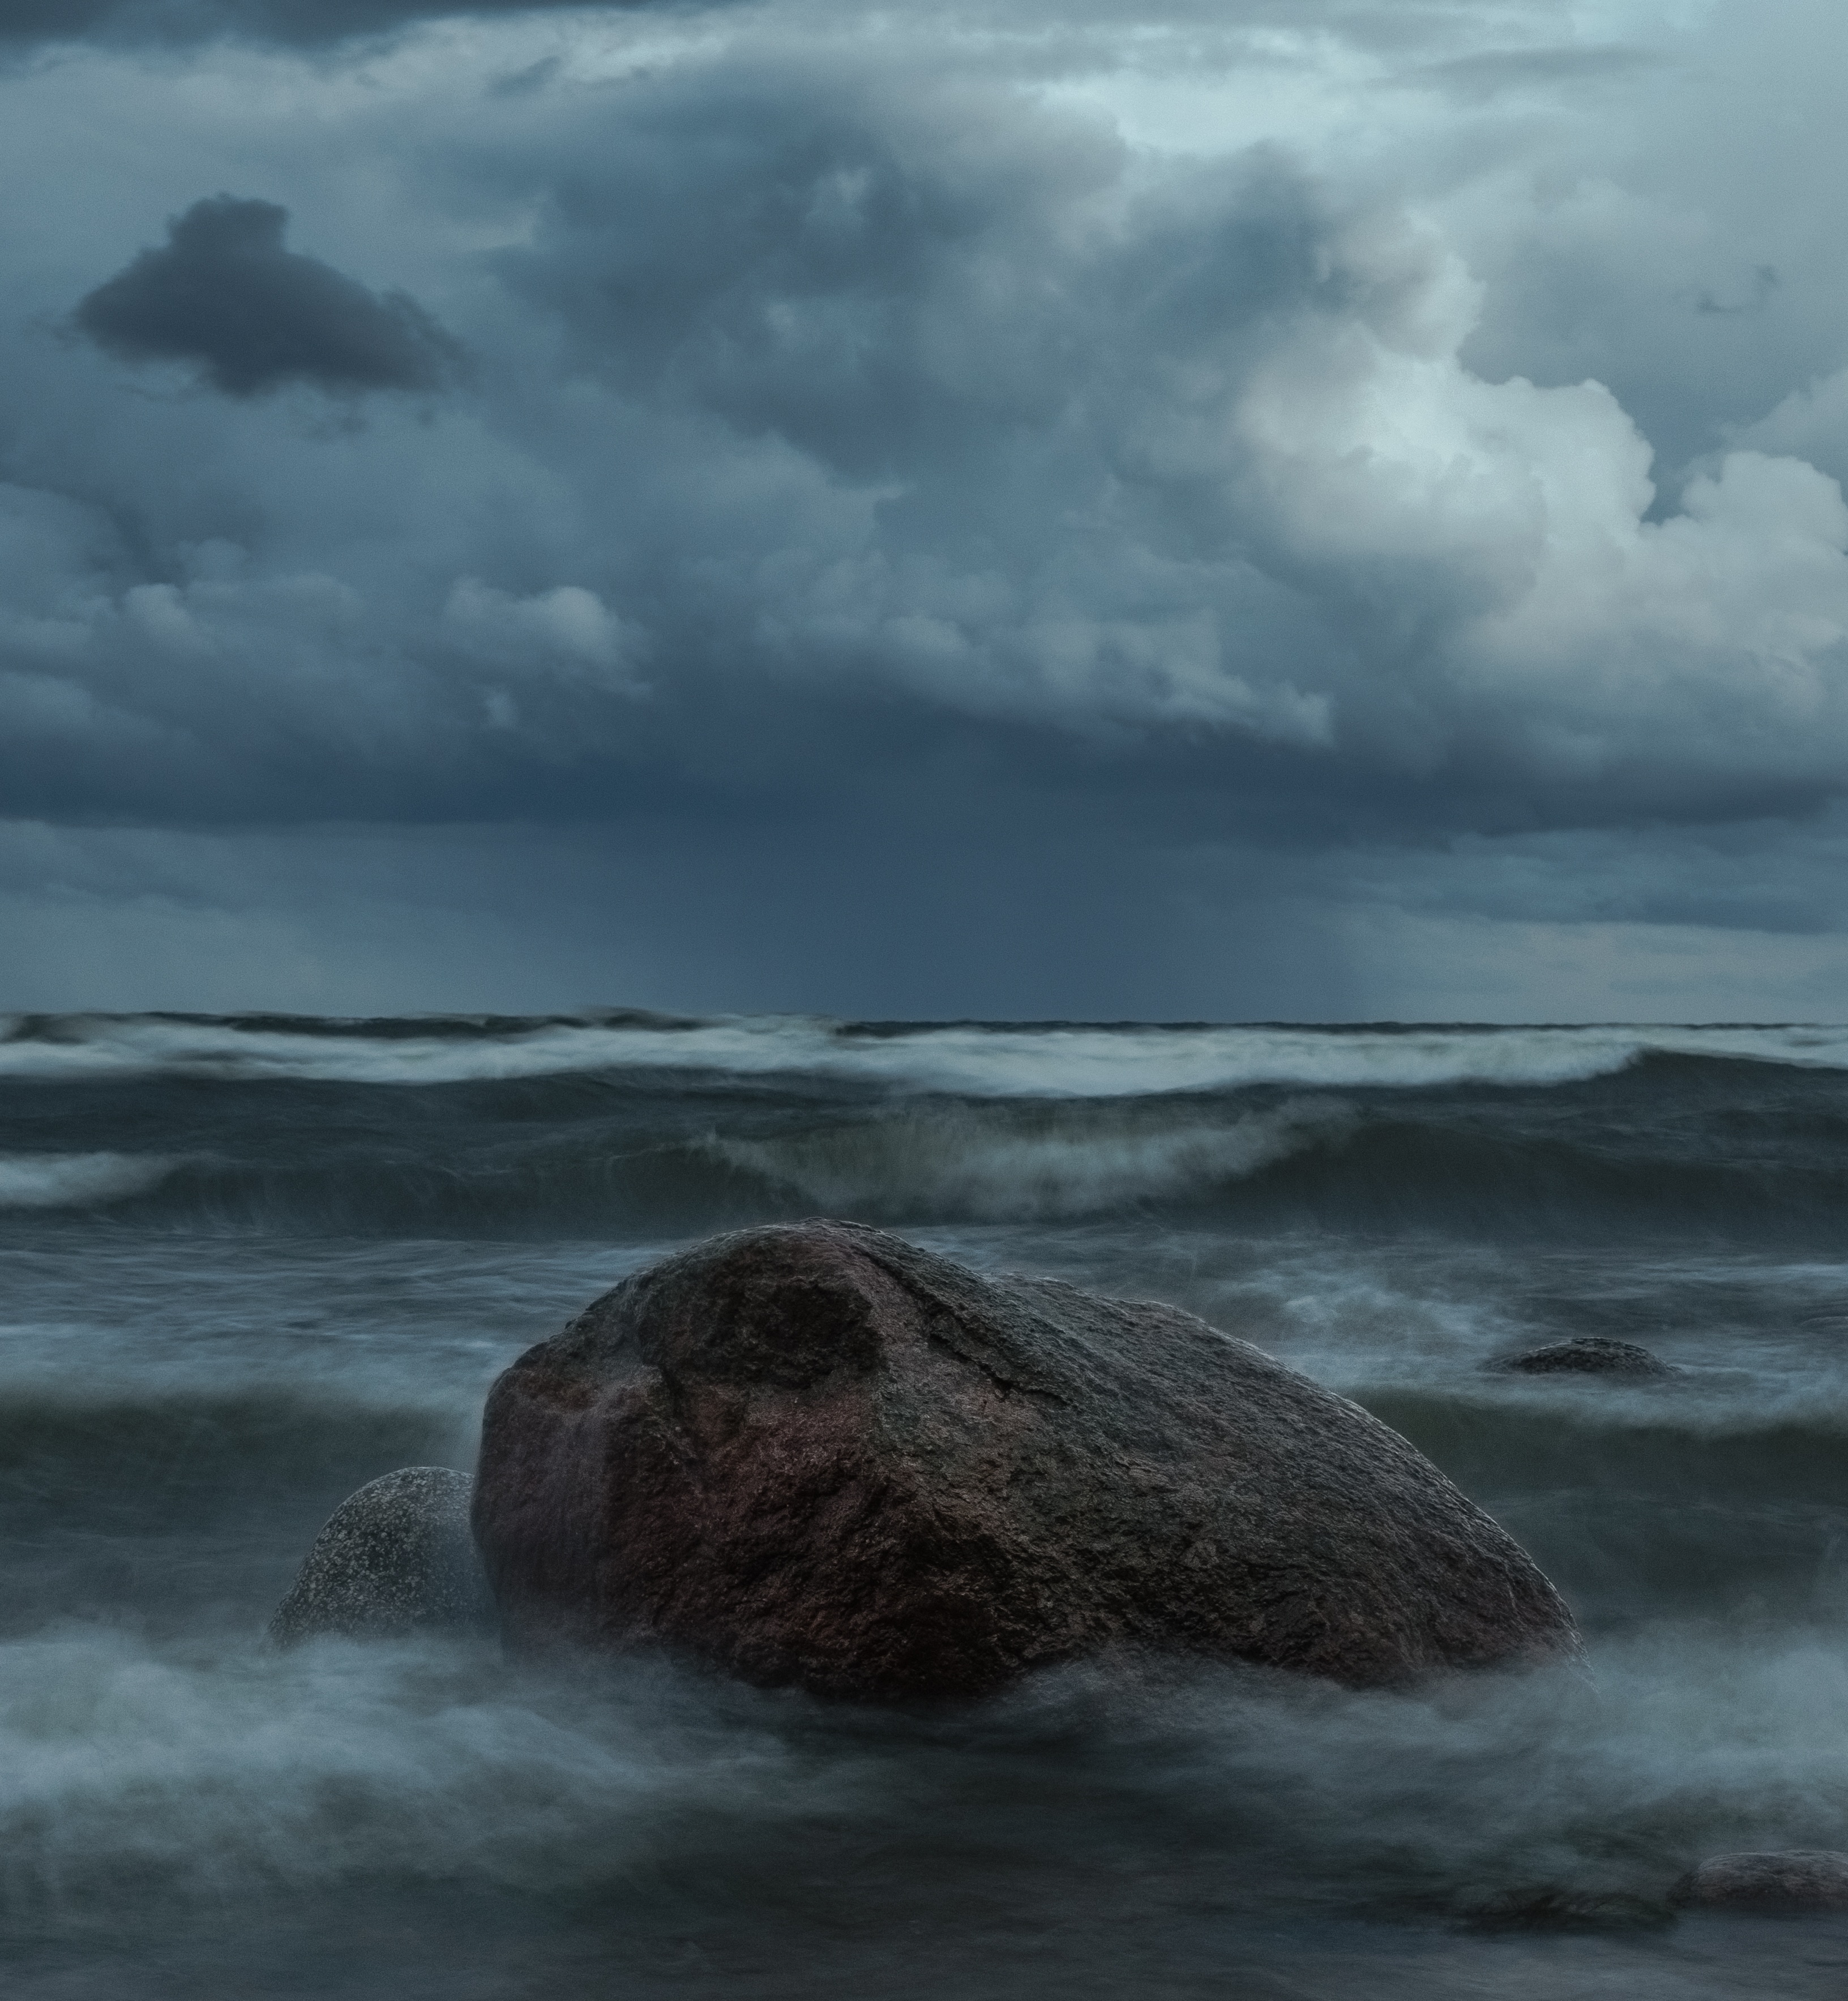 залив, финский залив, море, камень, волны, облака, небо, wave, bay, sky, cloud, long exposure, Alexey S